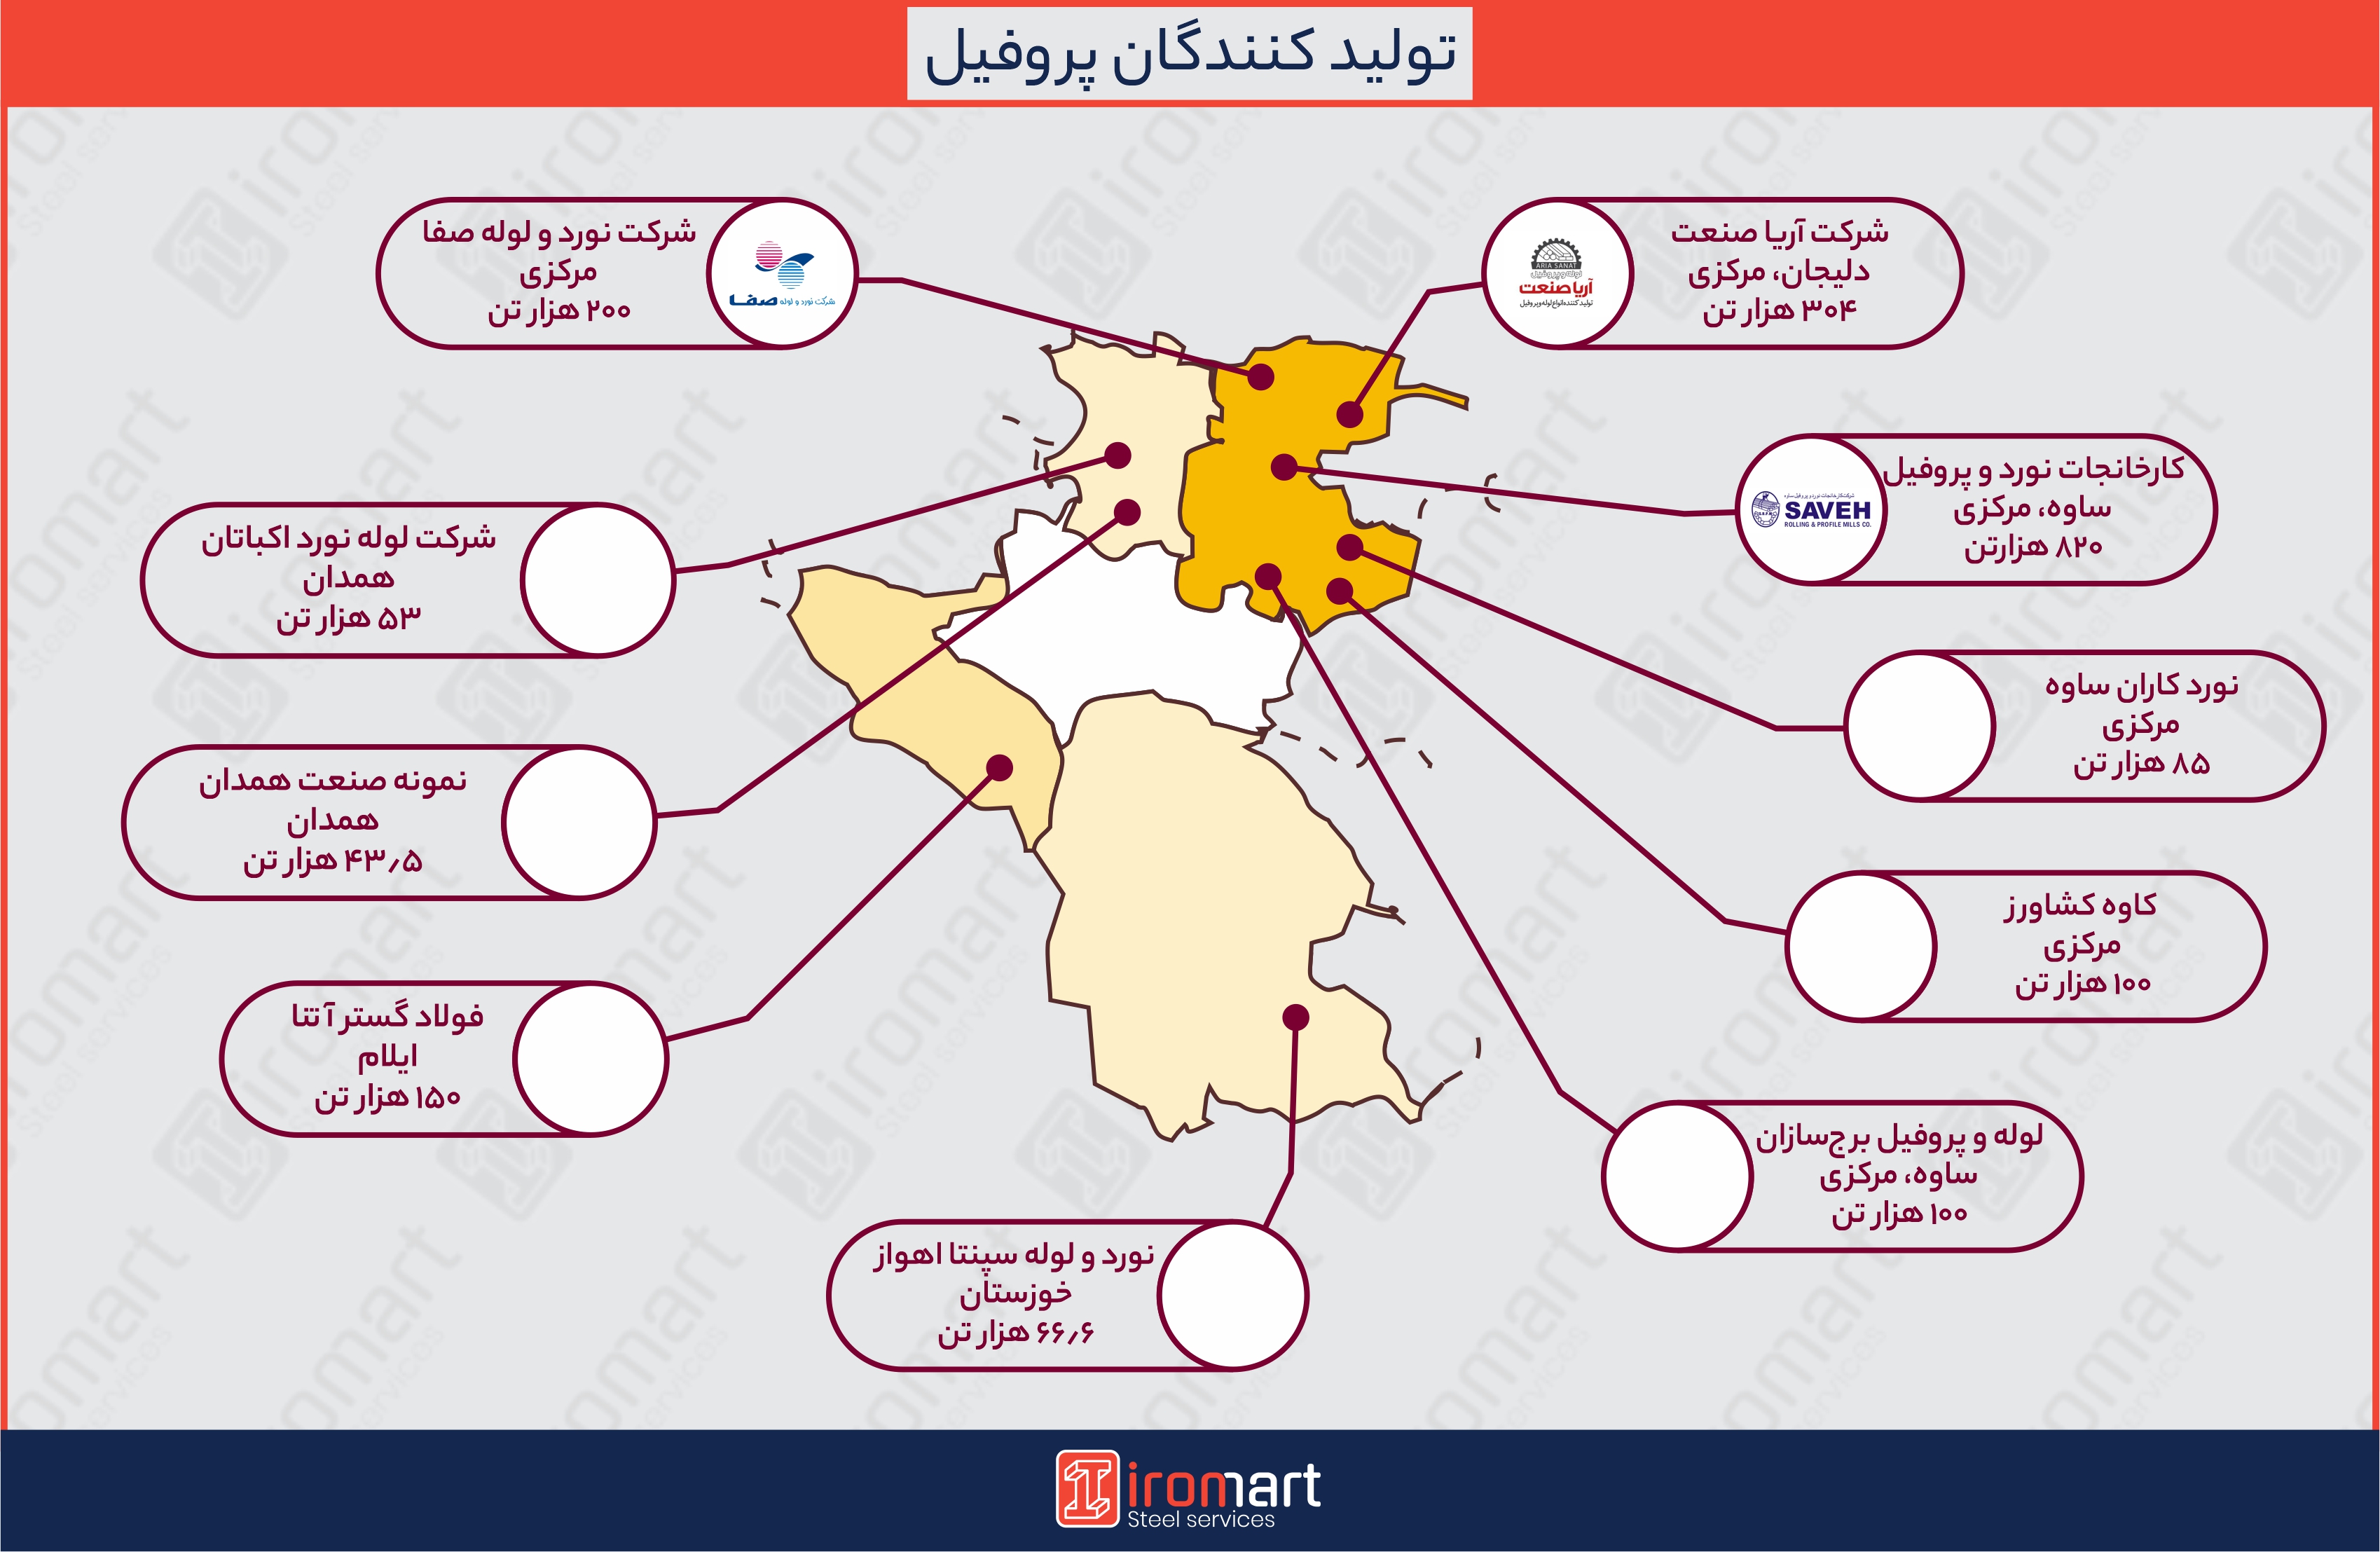 لیست تولیدکنندگان پروفیل در ایران